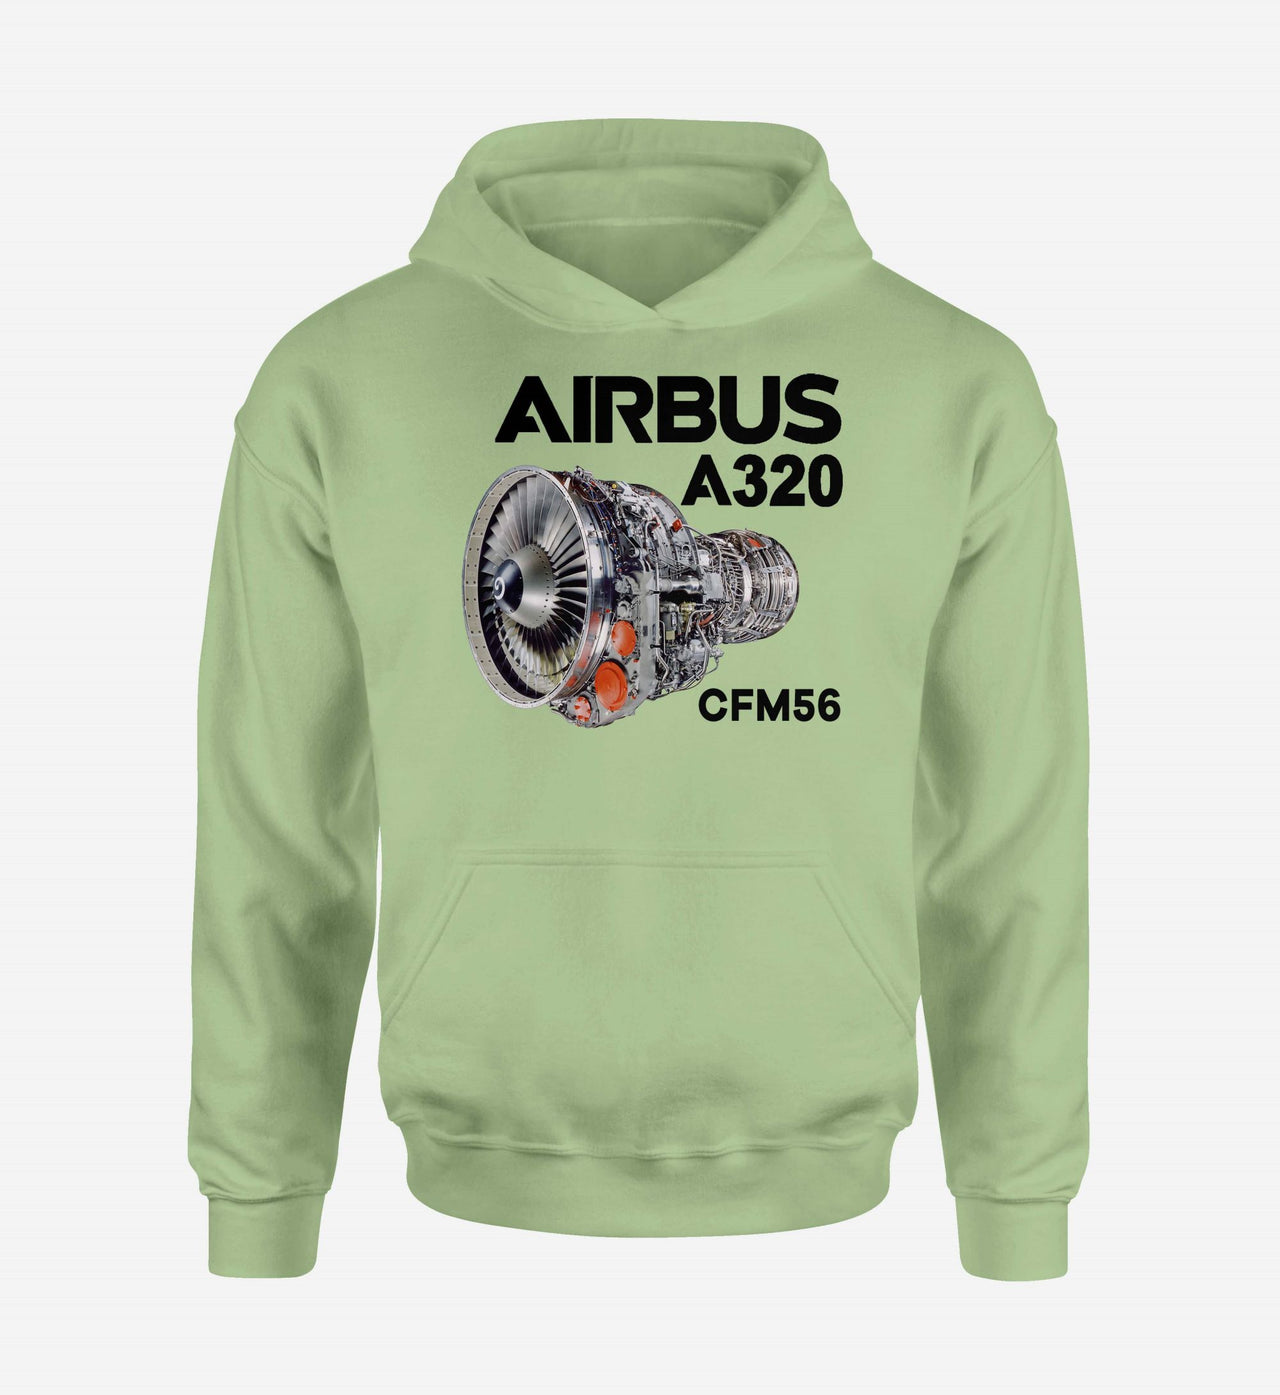 Airbus A320 & CFM56 Engine Designed Hoodies